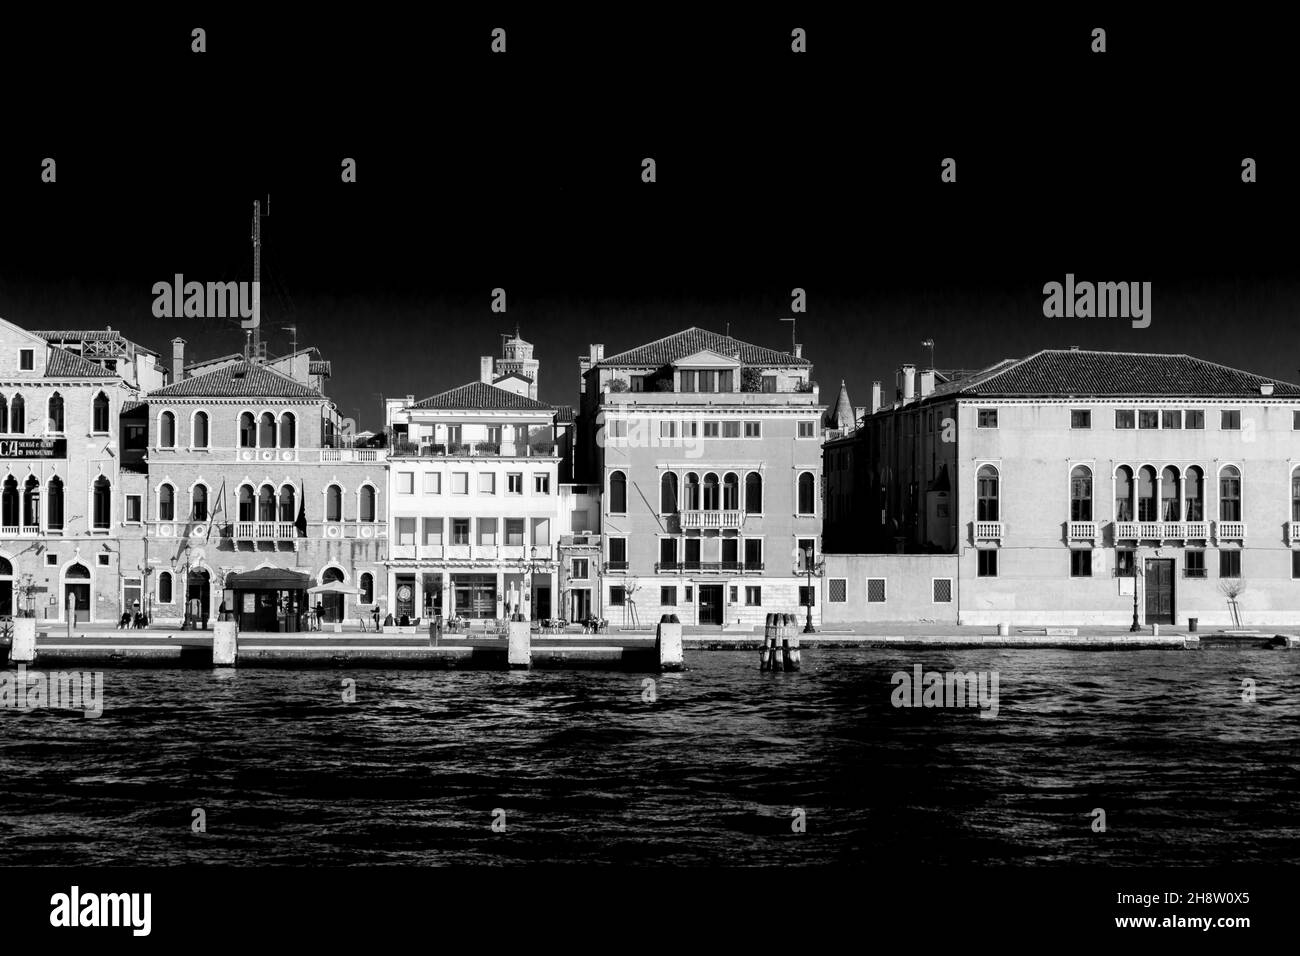 Interpretazione artistica in bianco e nero di un paesaggio classico a Venezia, con edifici sul fiume. Vista dal canale Giudecca. Foto Stock